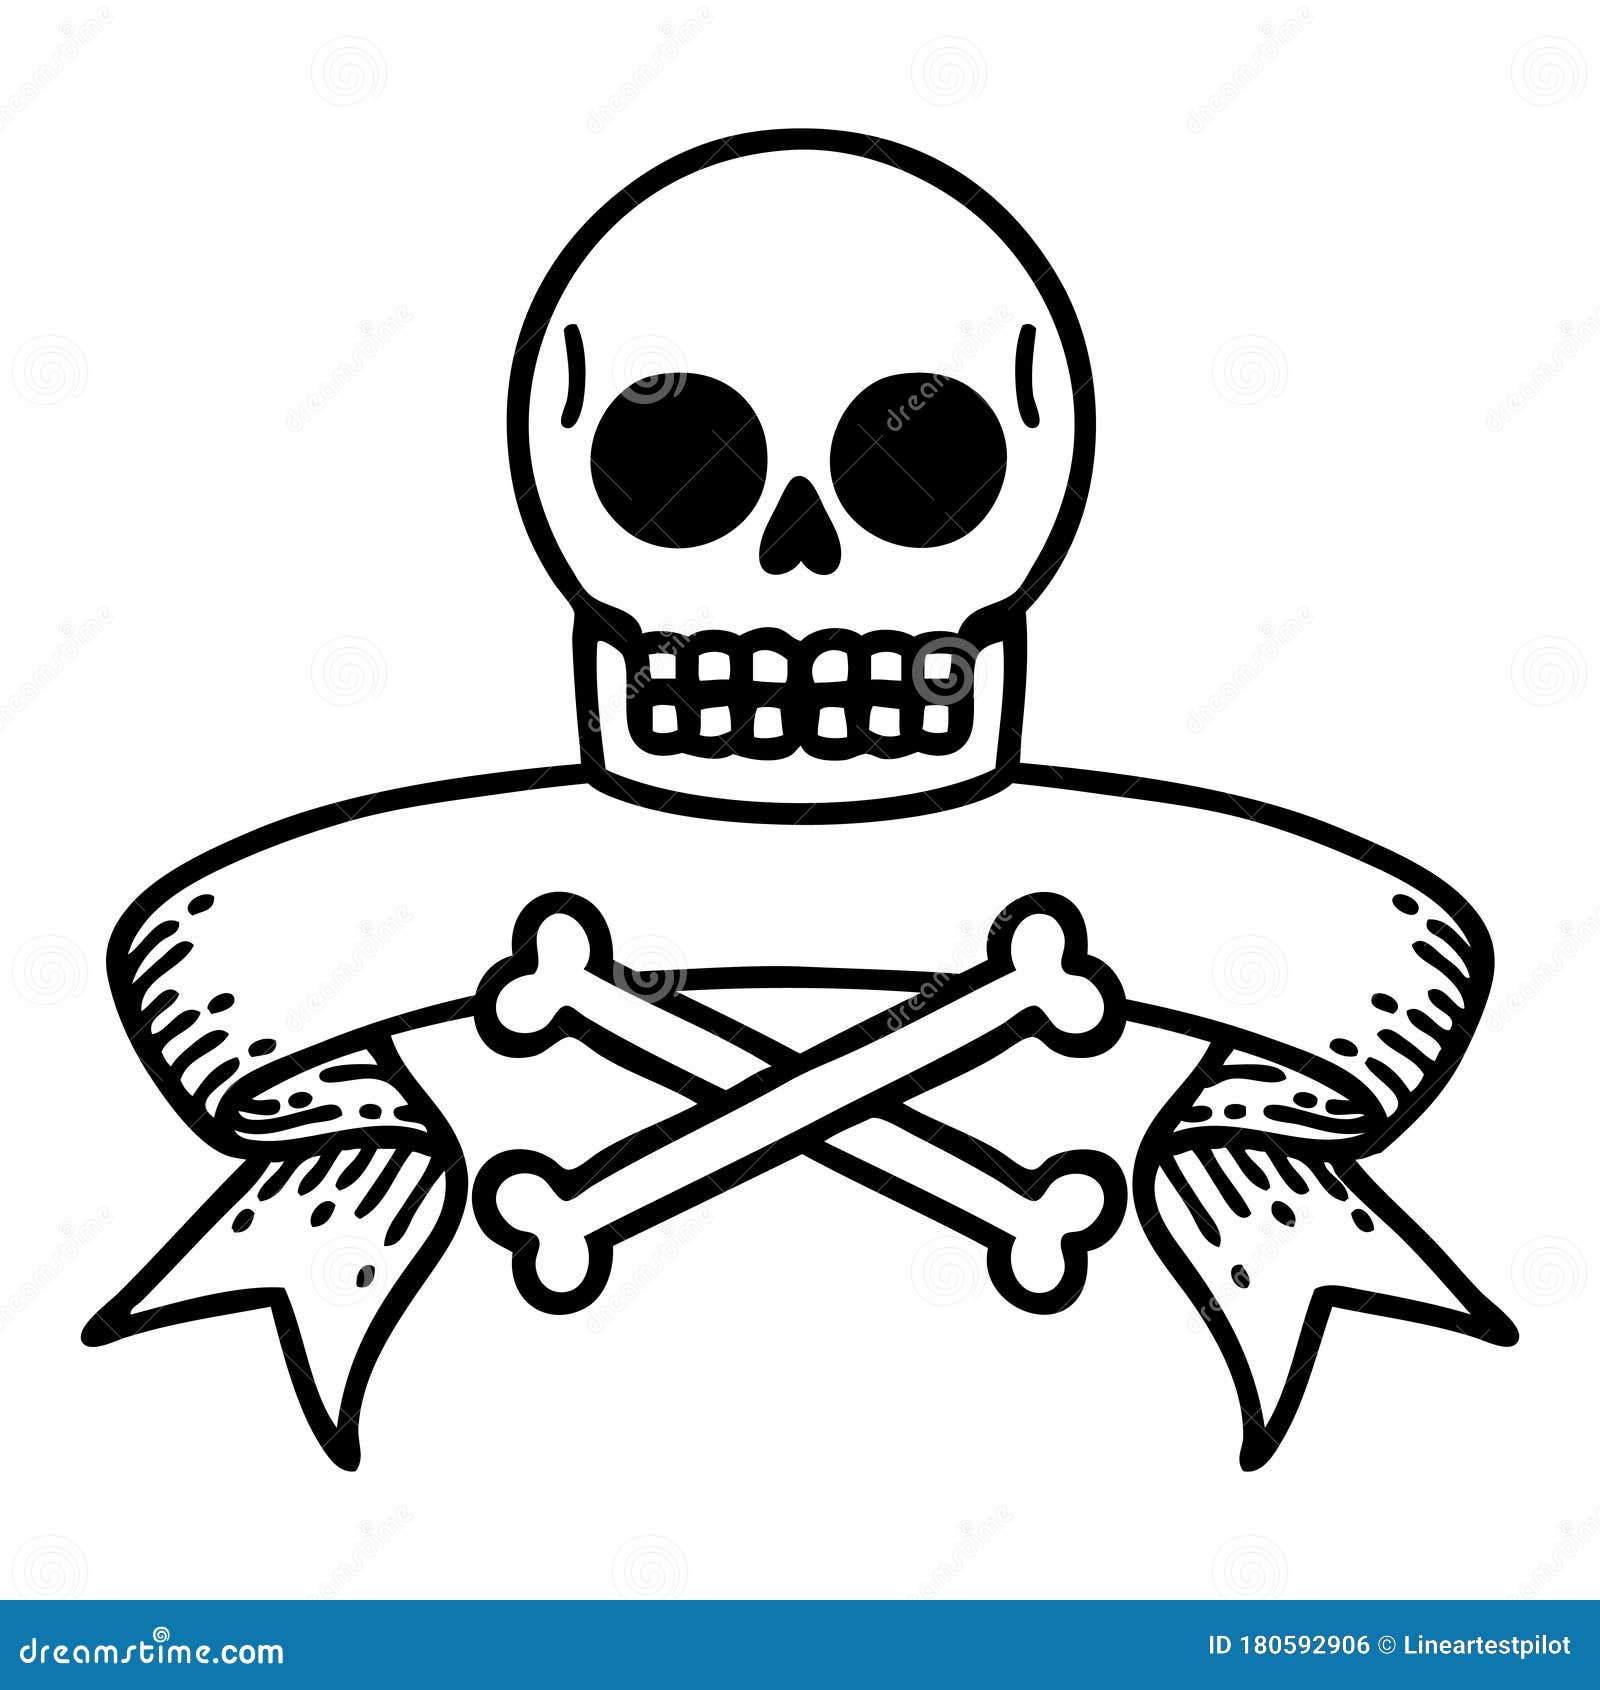 Skull and crossed bones tattoo on the arm  Tattoogridnet